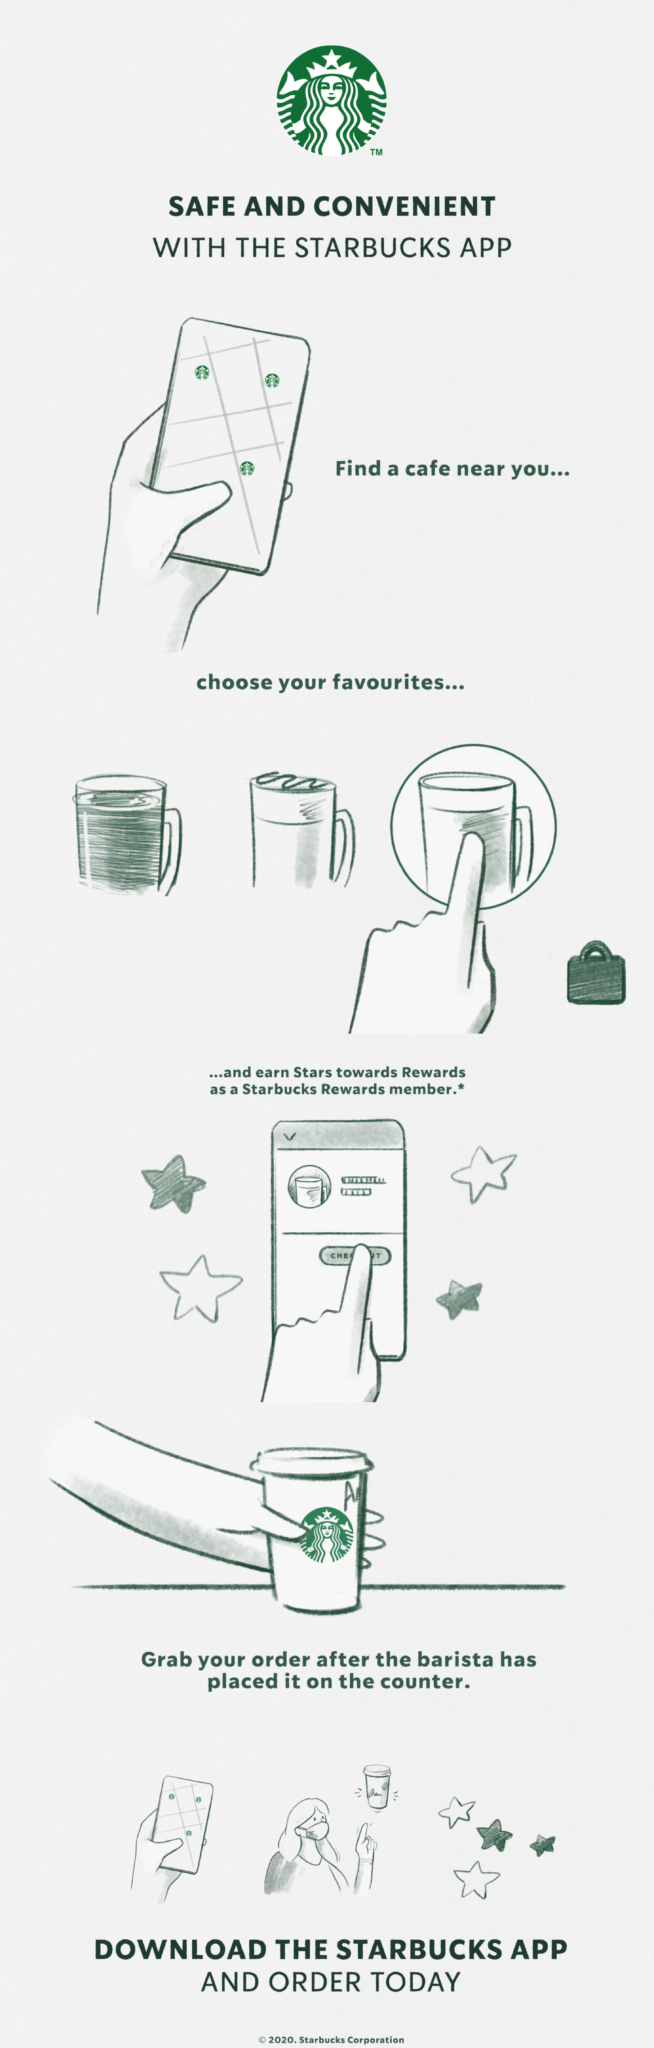 L'application Starbucks a un design simple et une bonne expérience utilisateur.